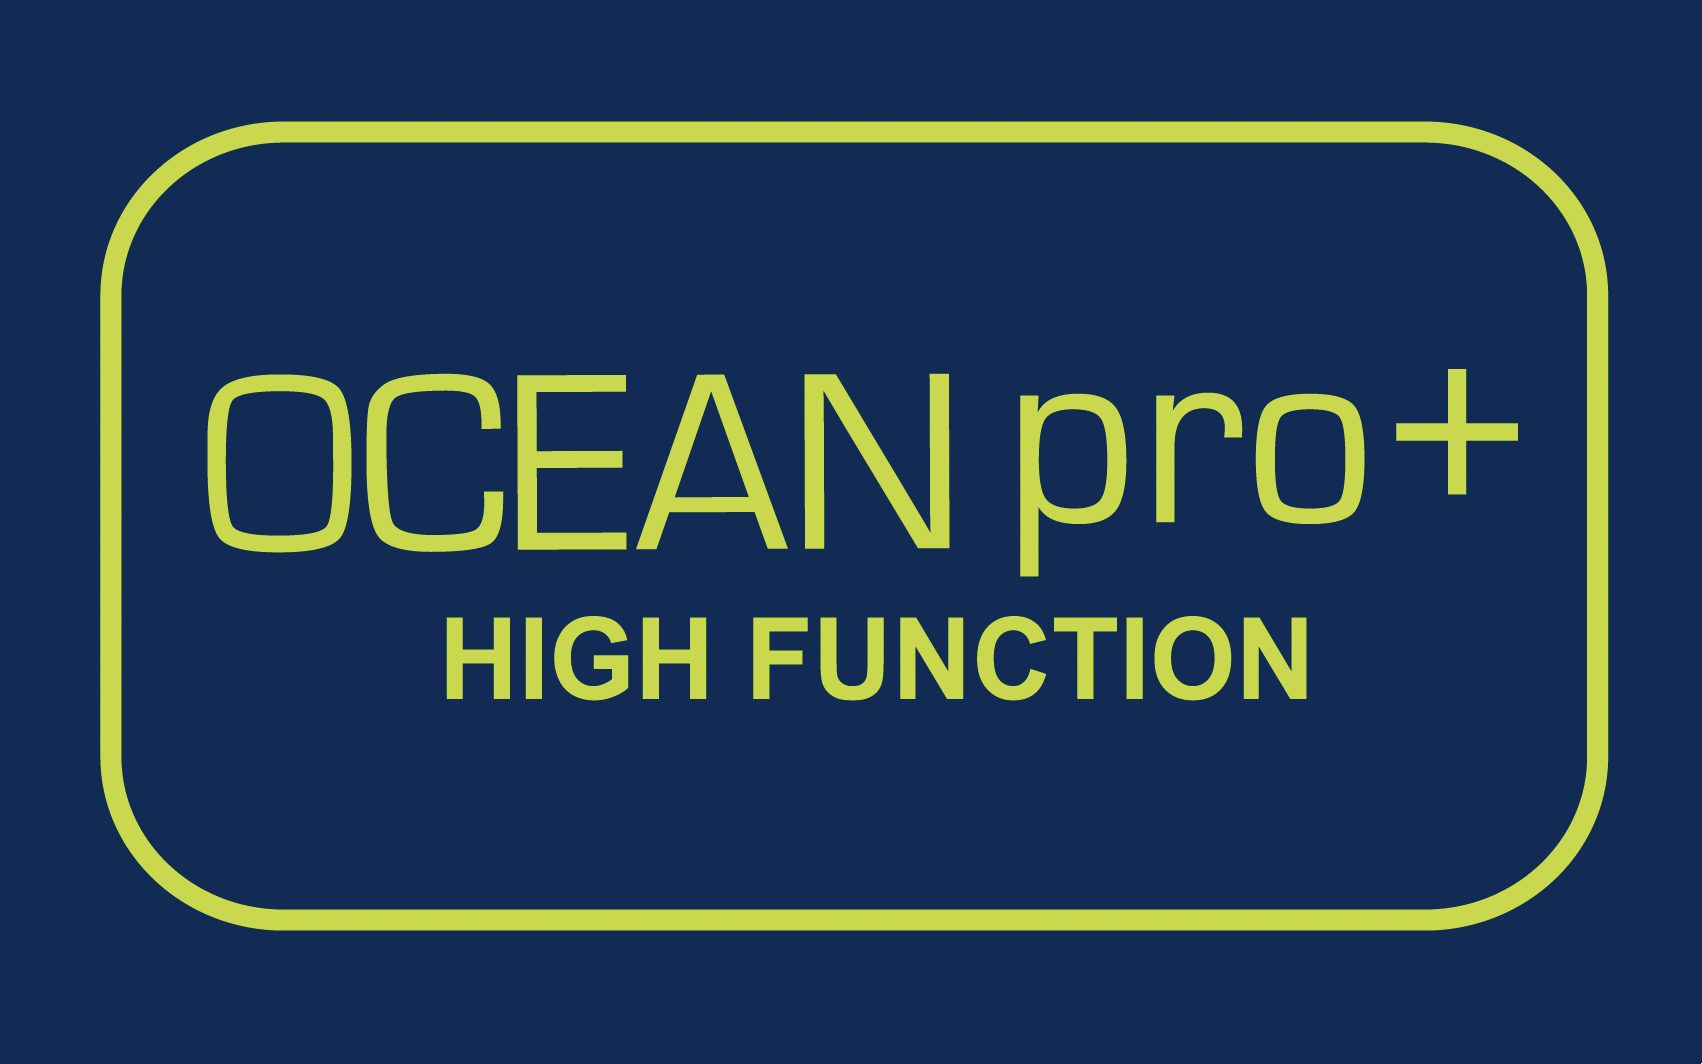 OCEAN pro+